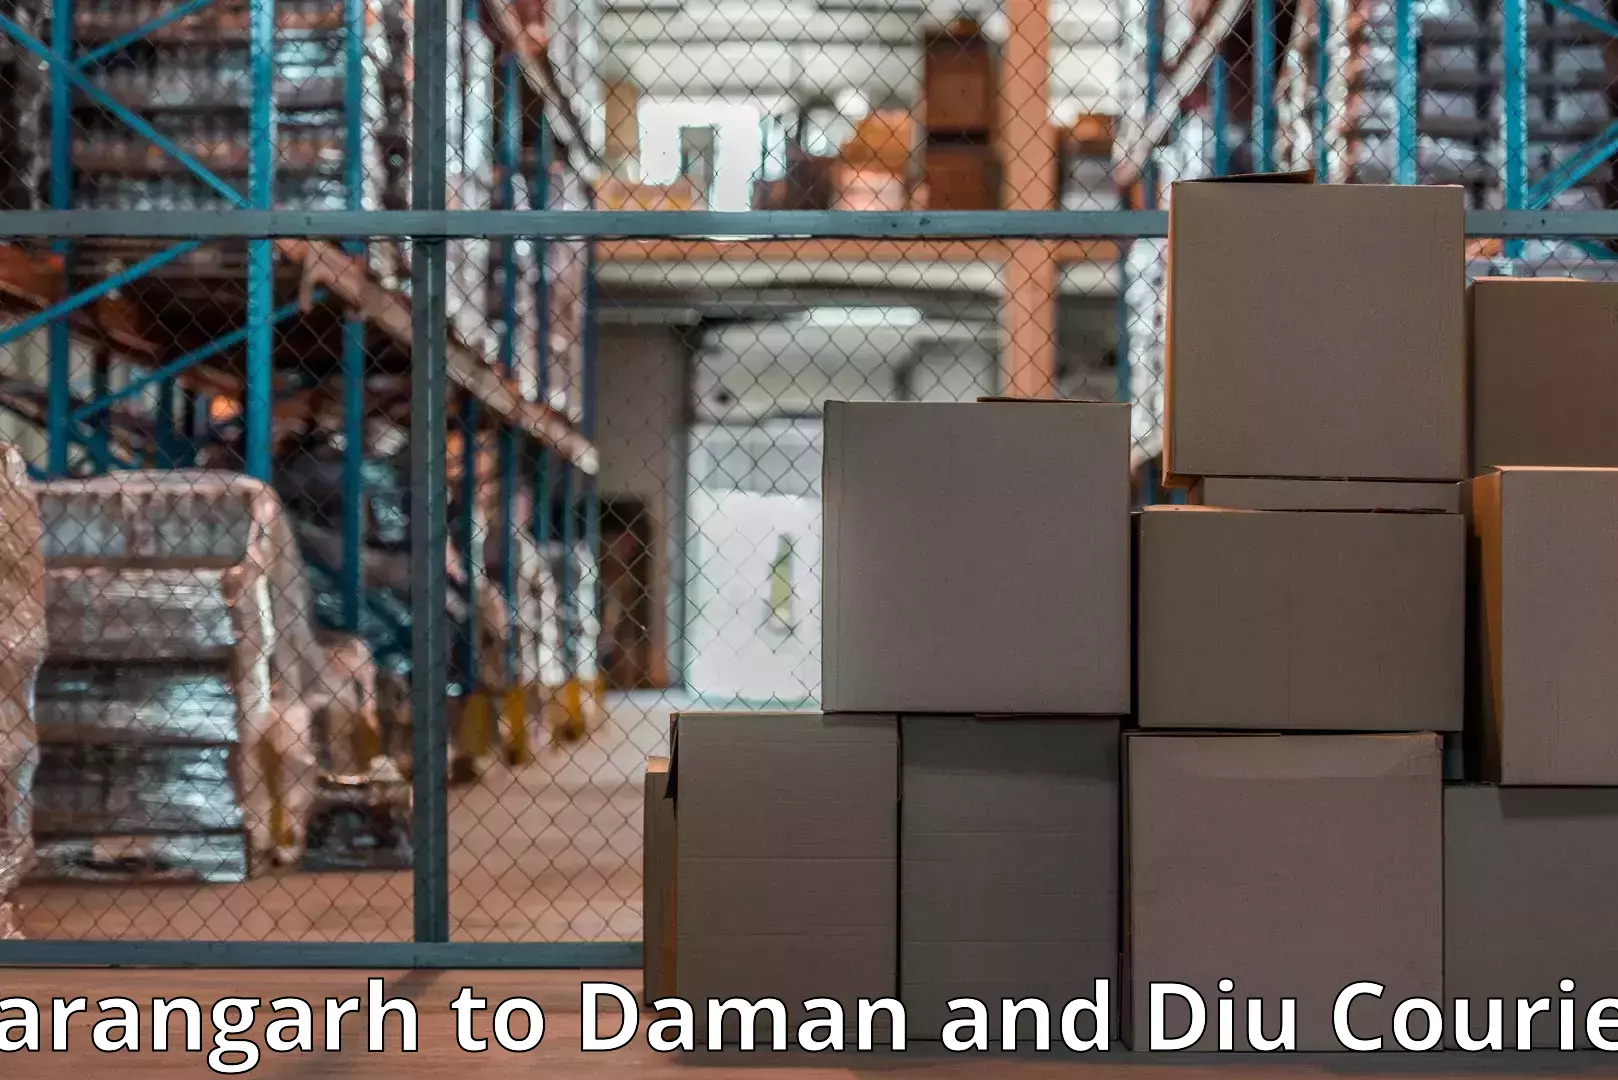 Home moving experts Sarangarh to Daman and Diu